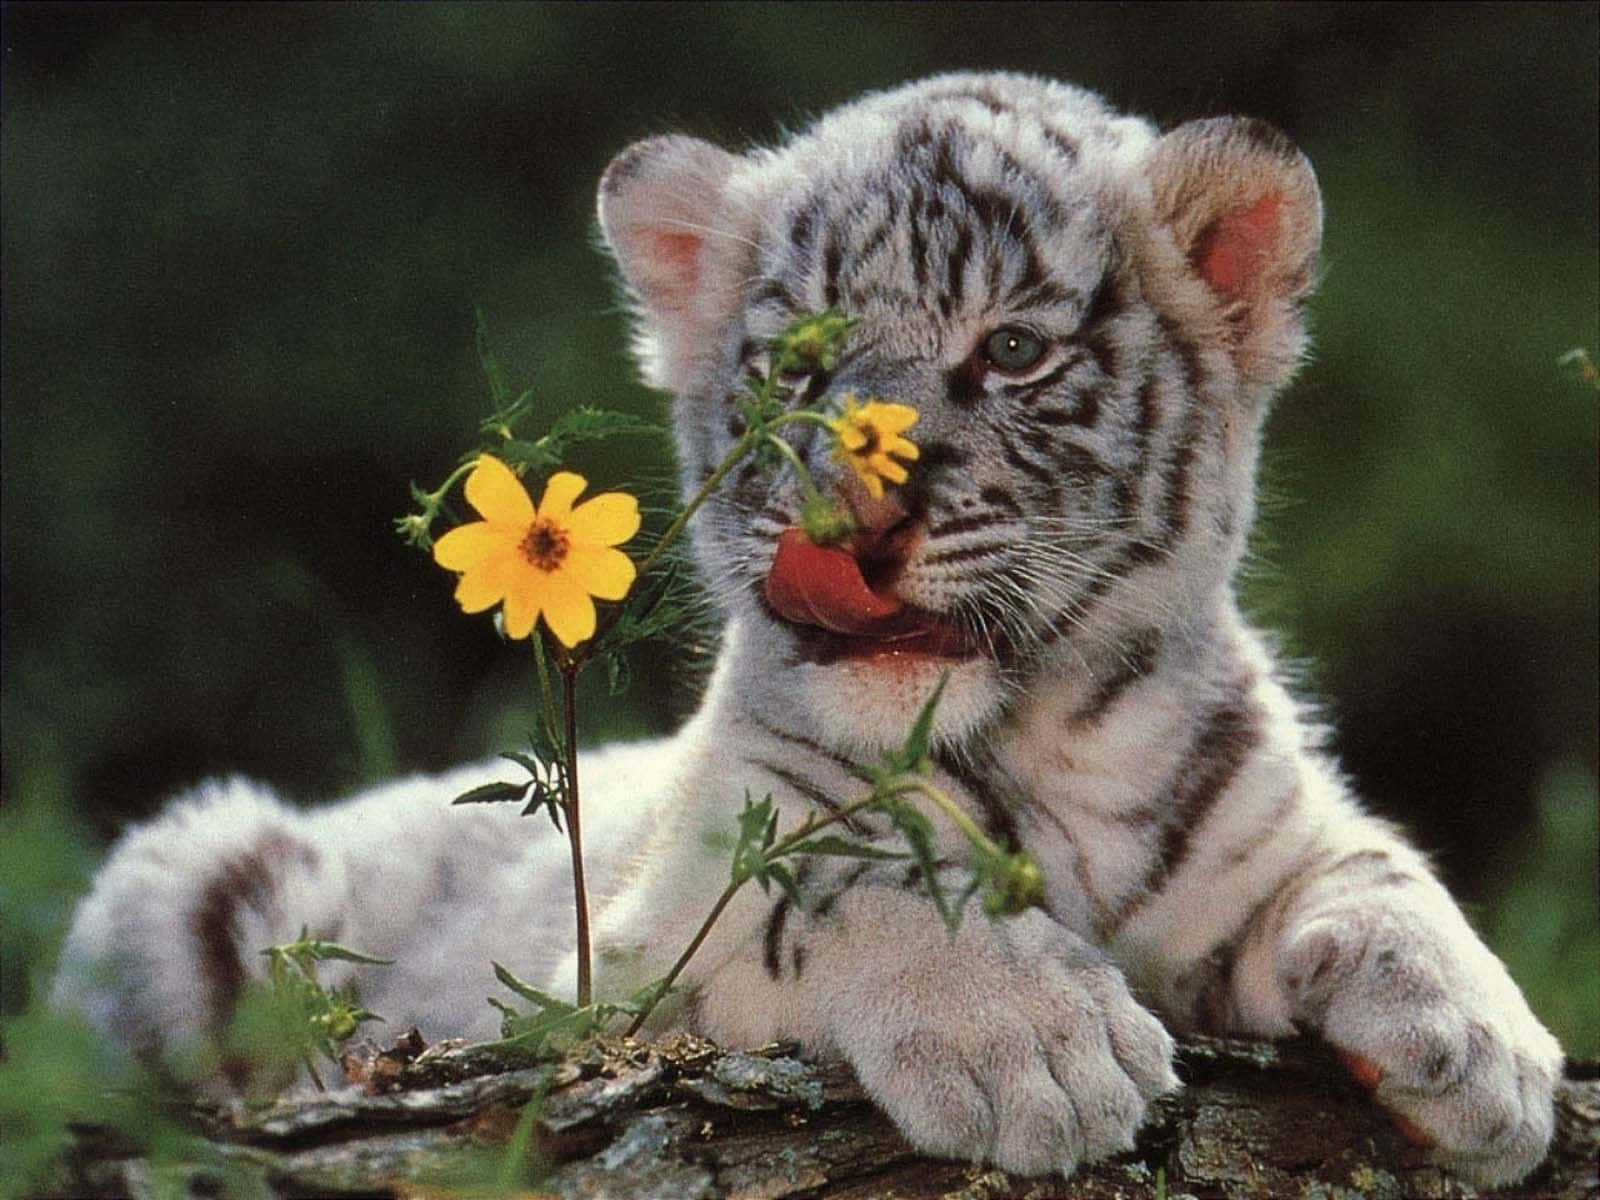 Imagende Un Tierno Tigre Con Una Adorable Flor.